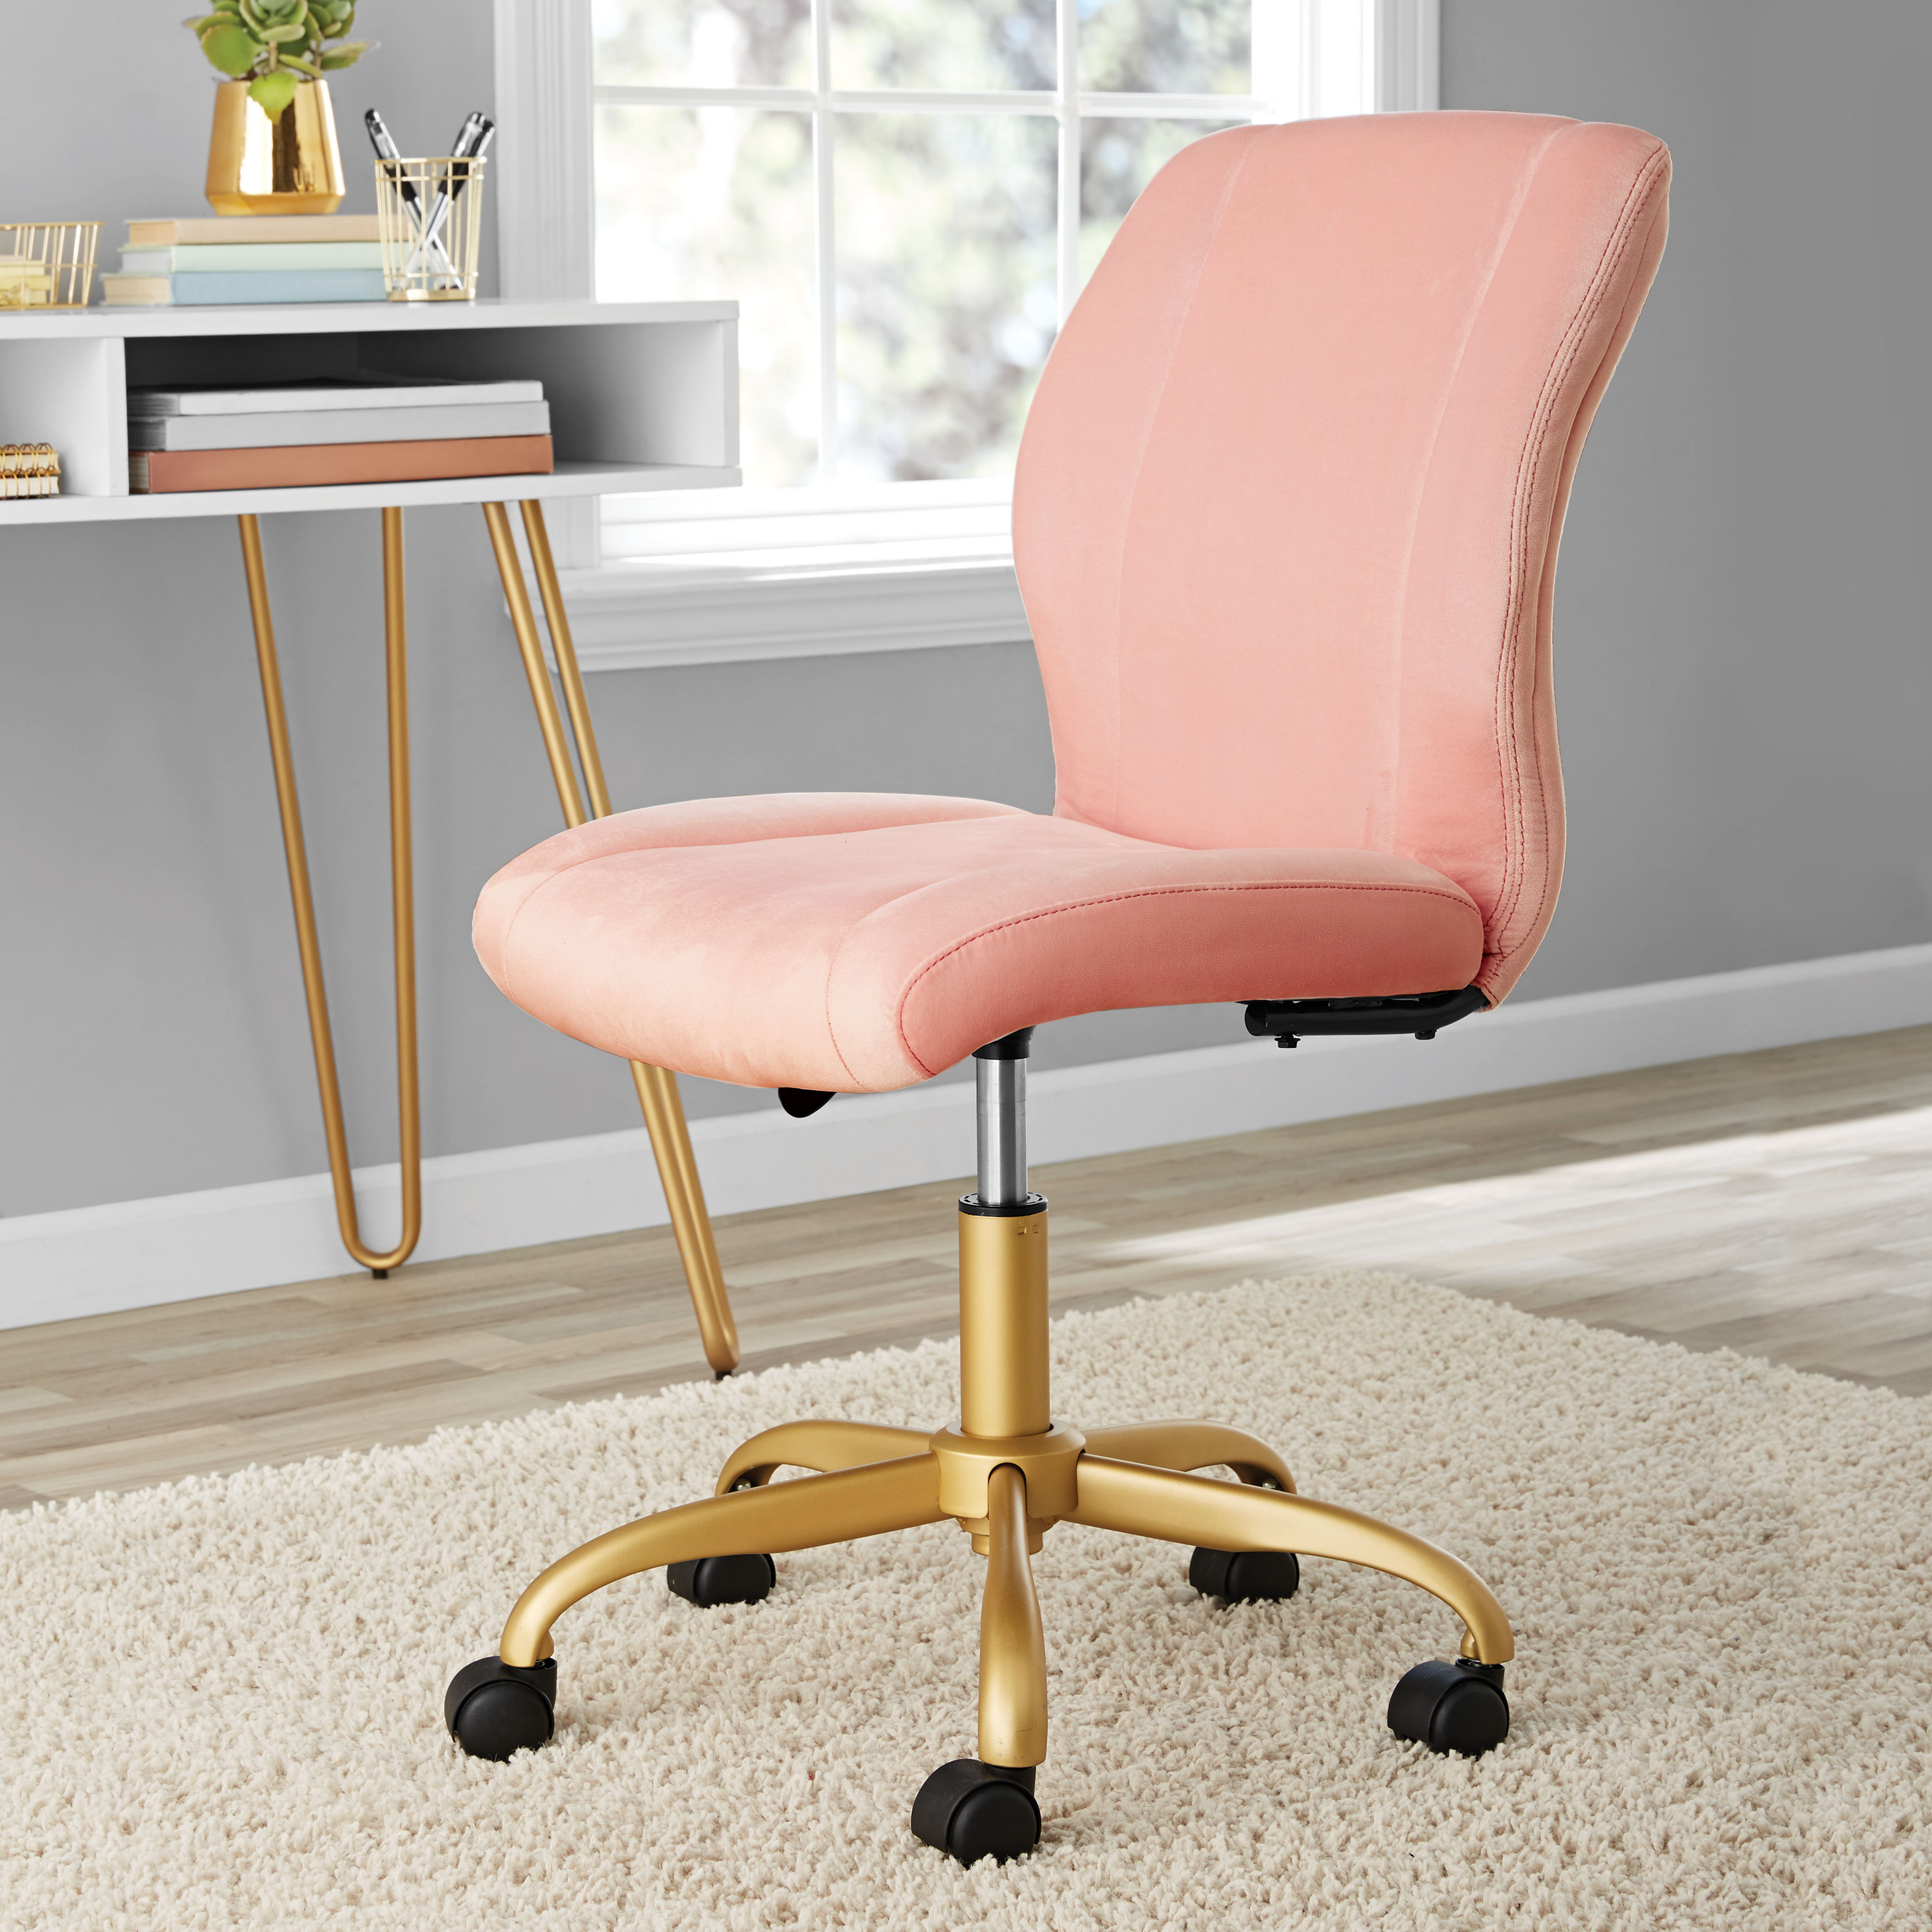 Buy Mainstays Plush Velvet Office Chair